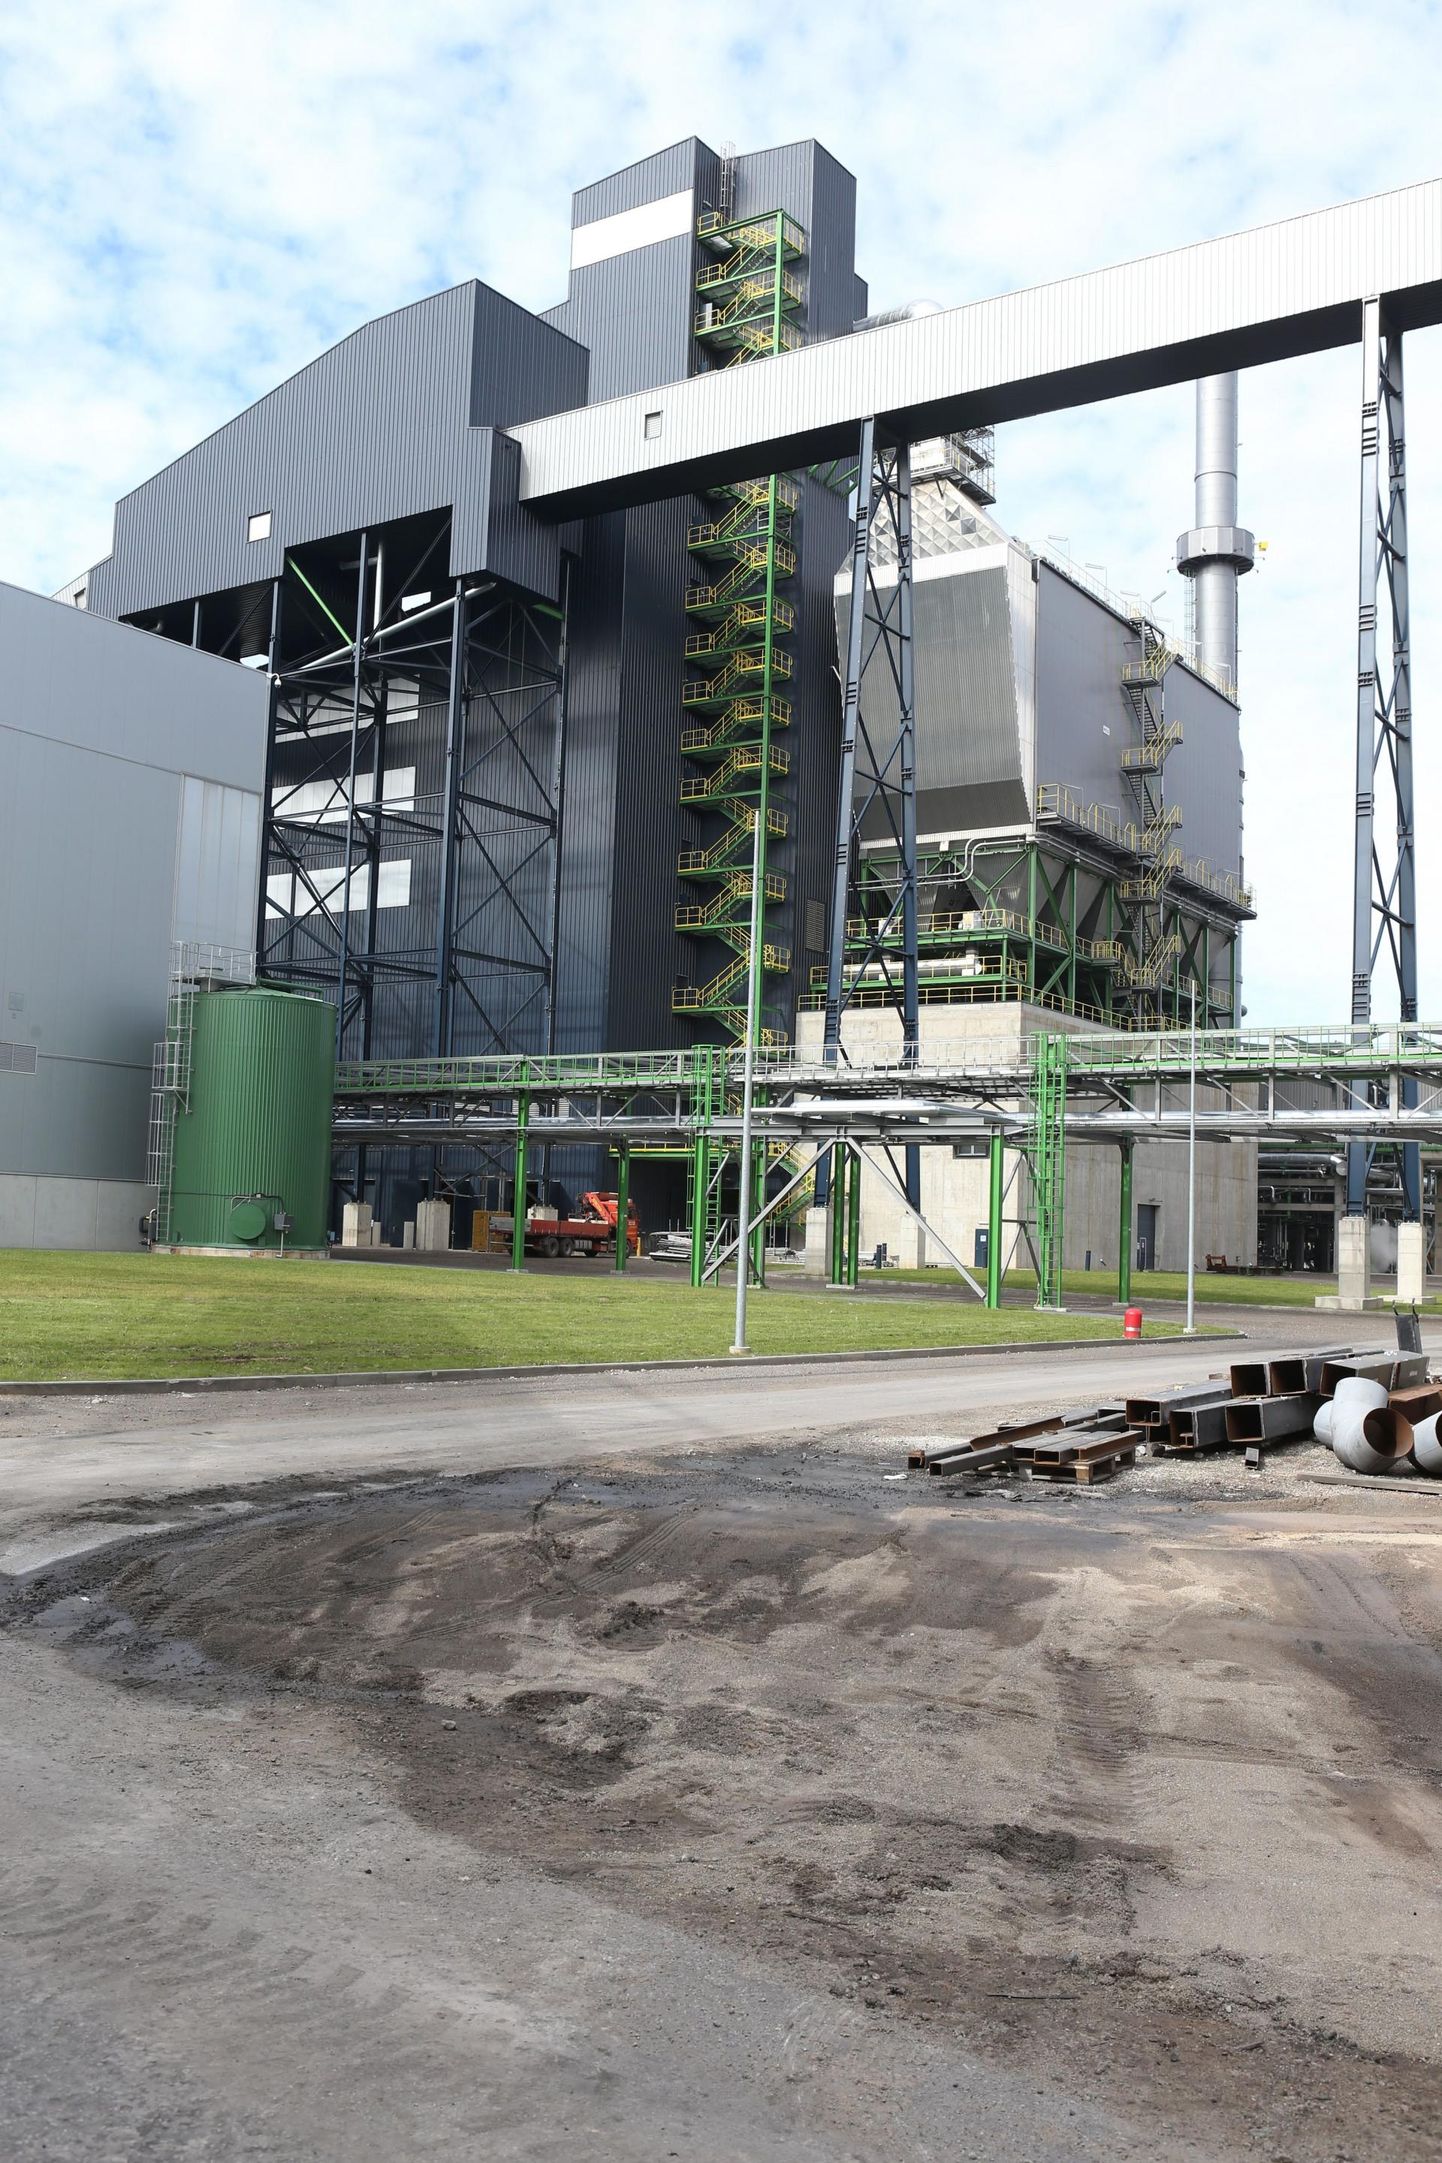 Завод Enefit280 в Аувере. Eesti Energia планирует строительство такого же к 2024 году.